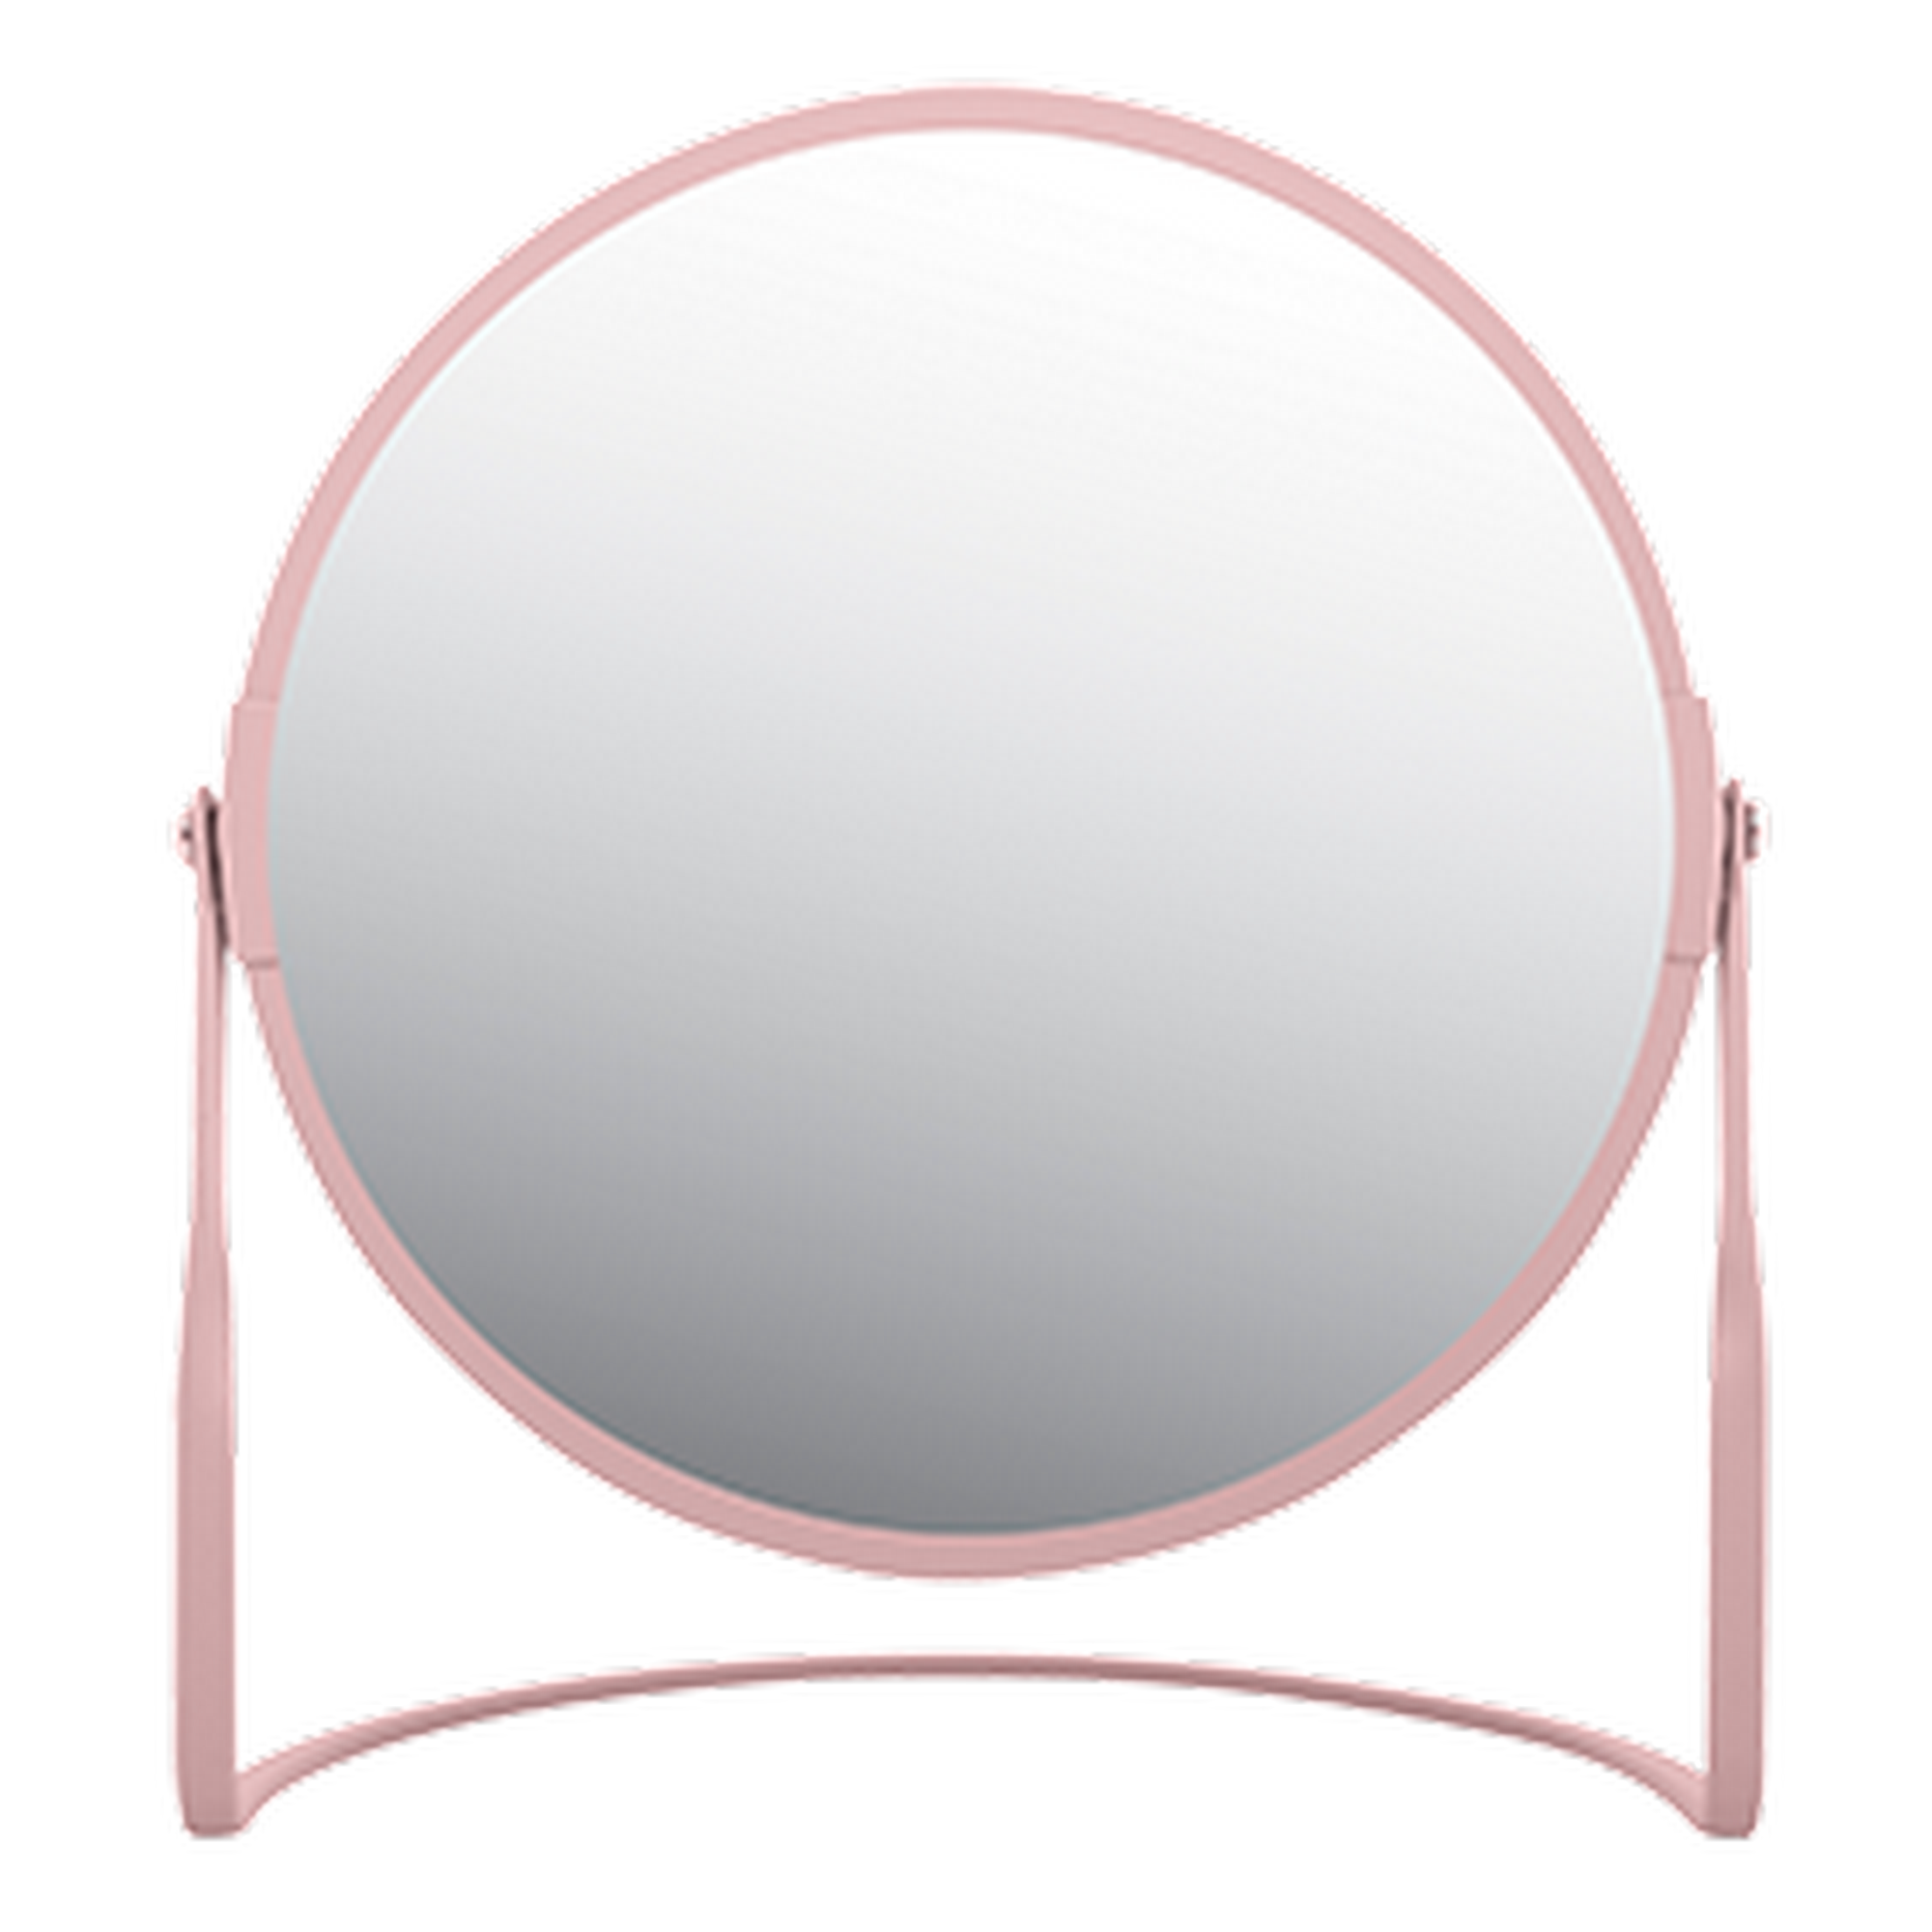 Standspiegel 'Akira' rosa Ø 18,4 cm, mit 5-fach Vergrößerung + product picture